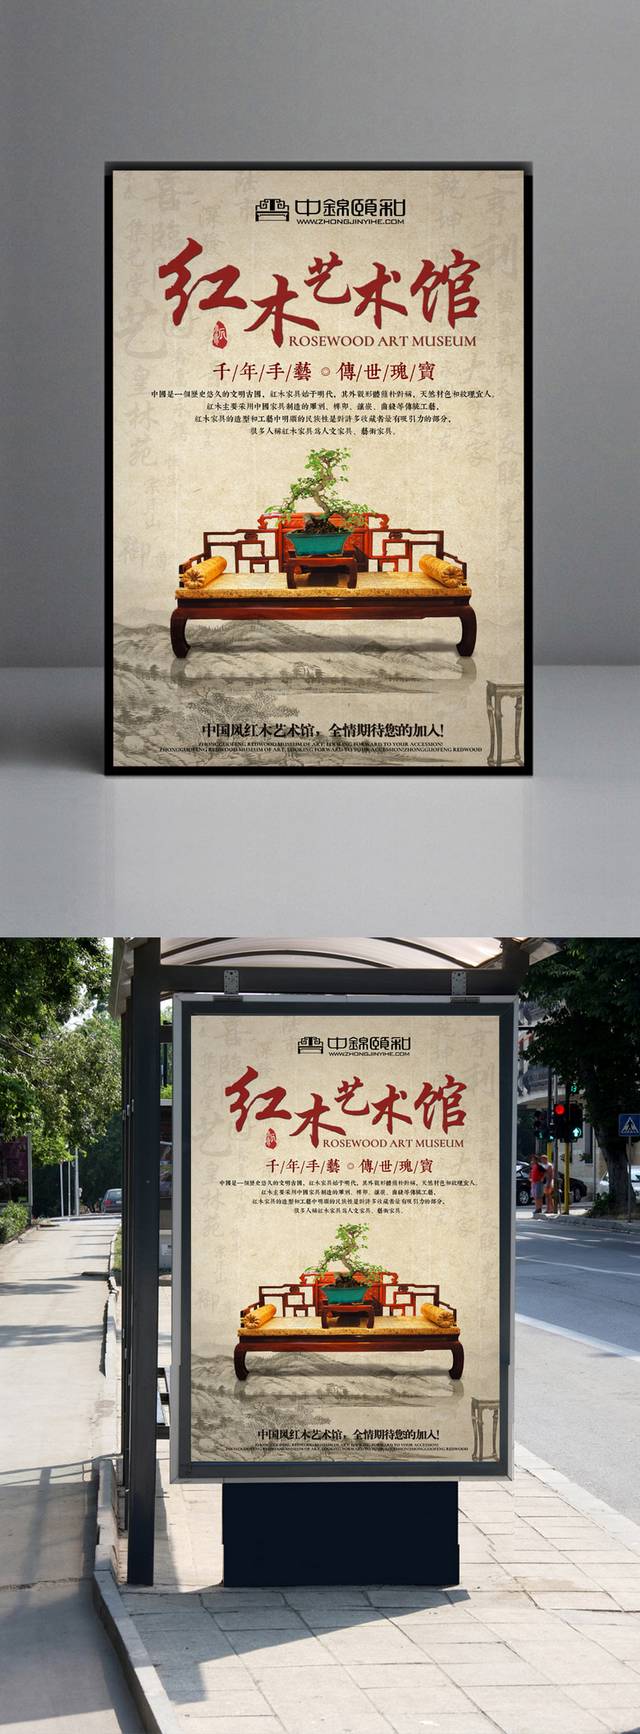 古典简约红木艺术馆海报